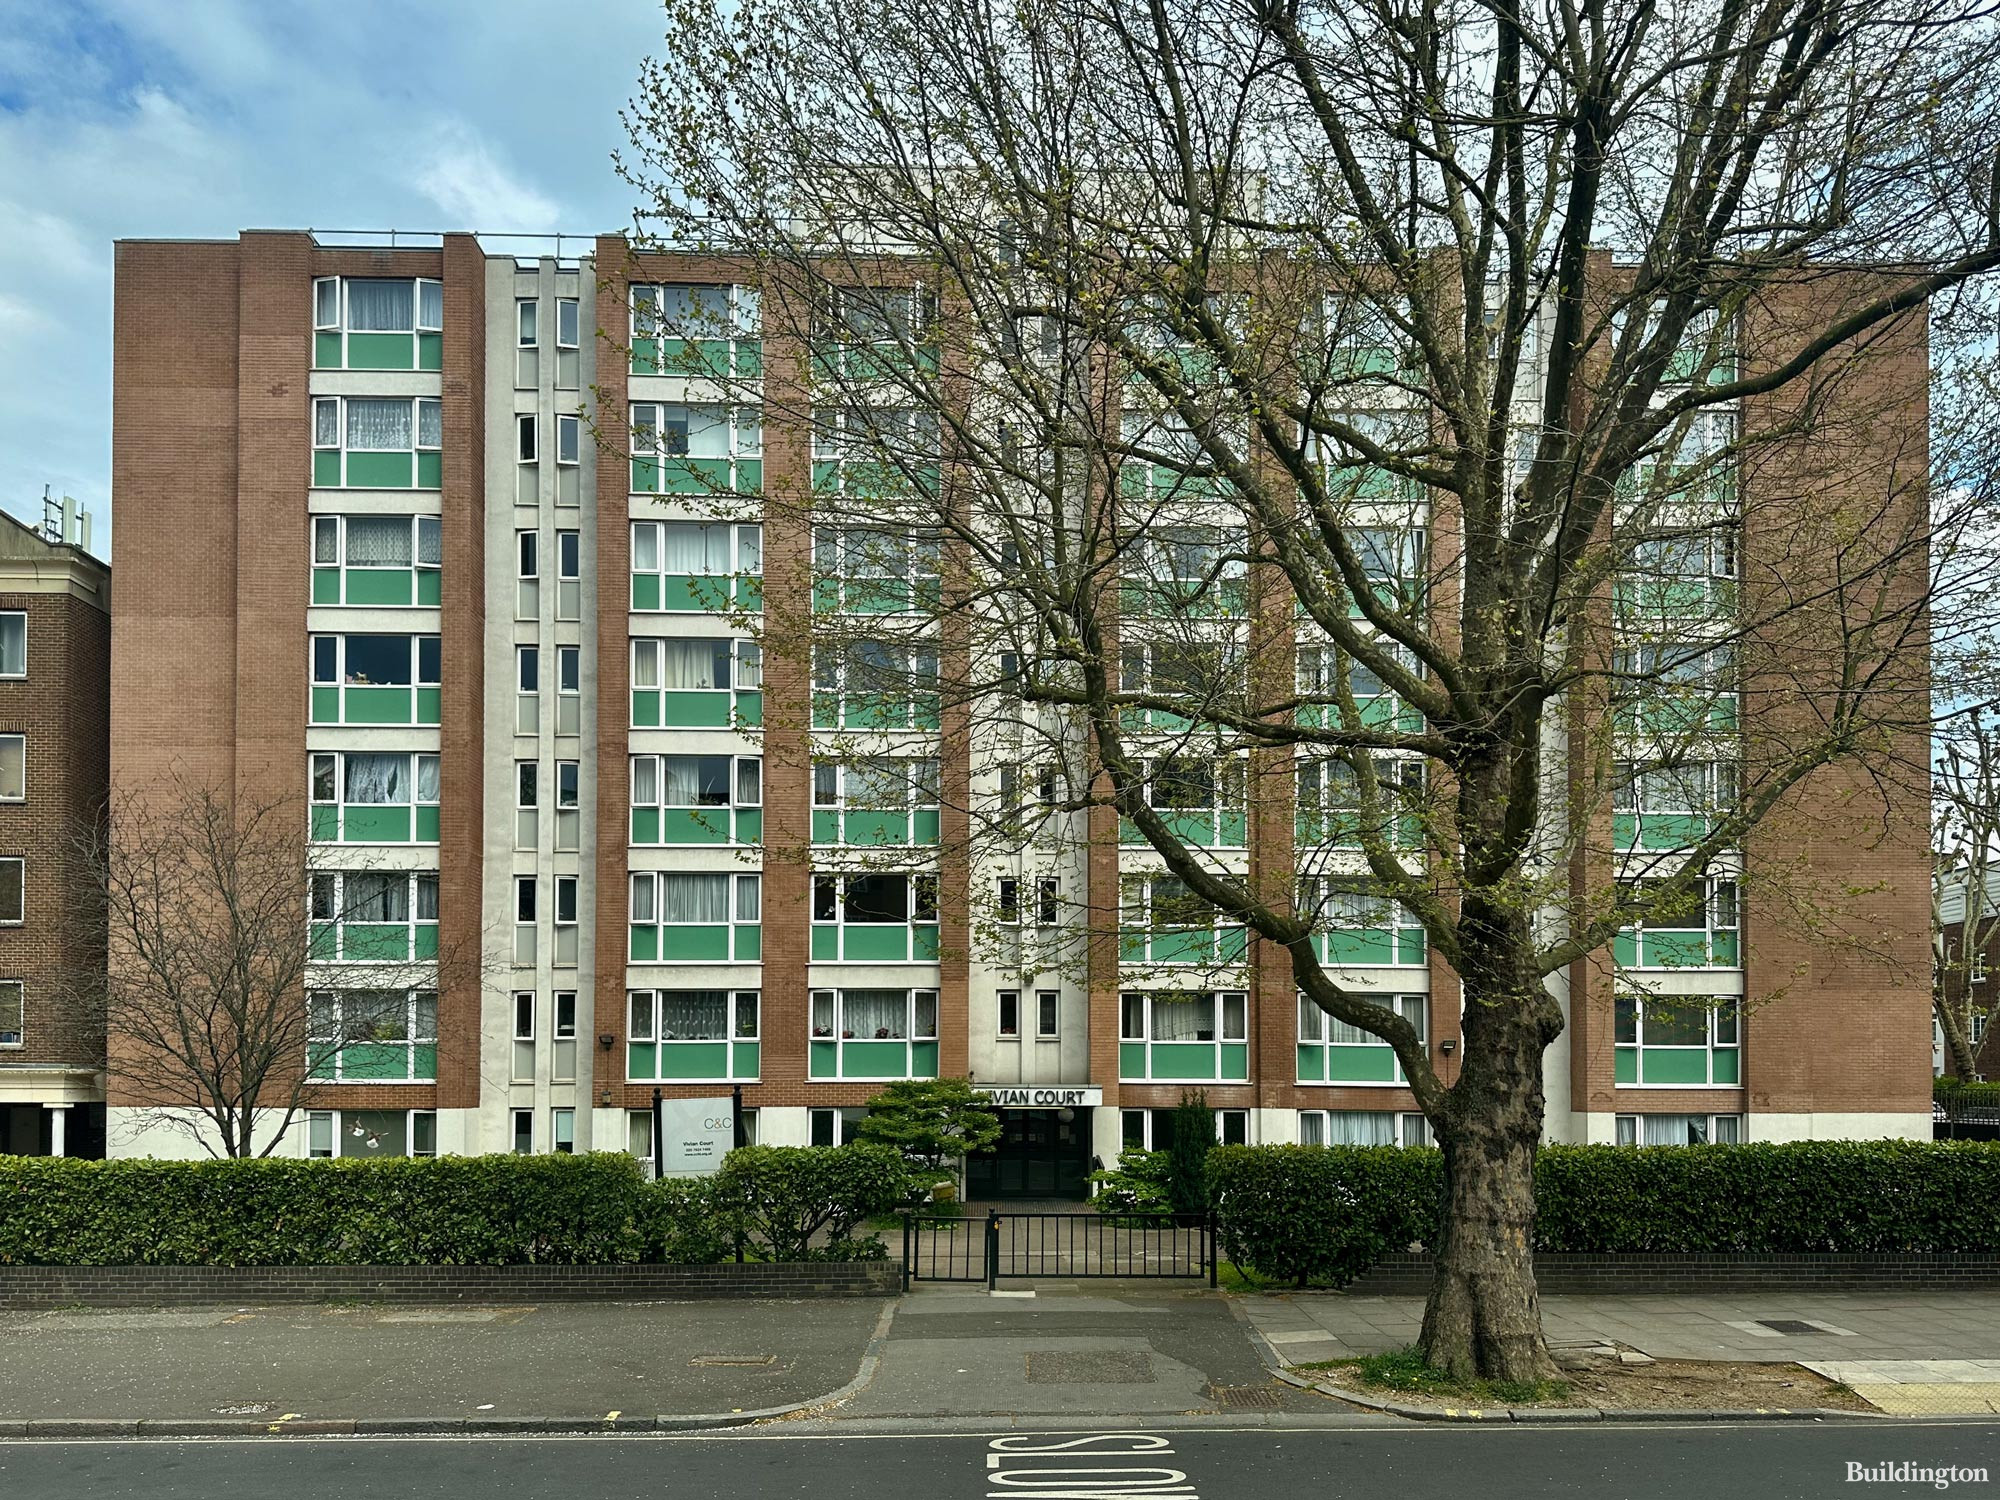 Vivian Court sheltered housing scheme in Maida Vale, London W9.